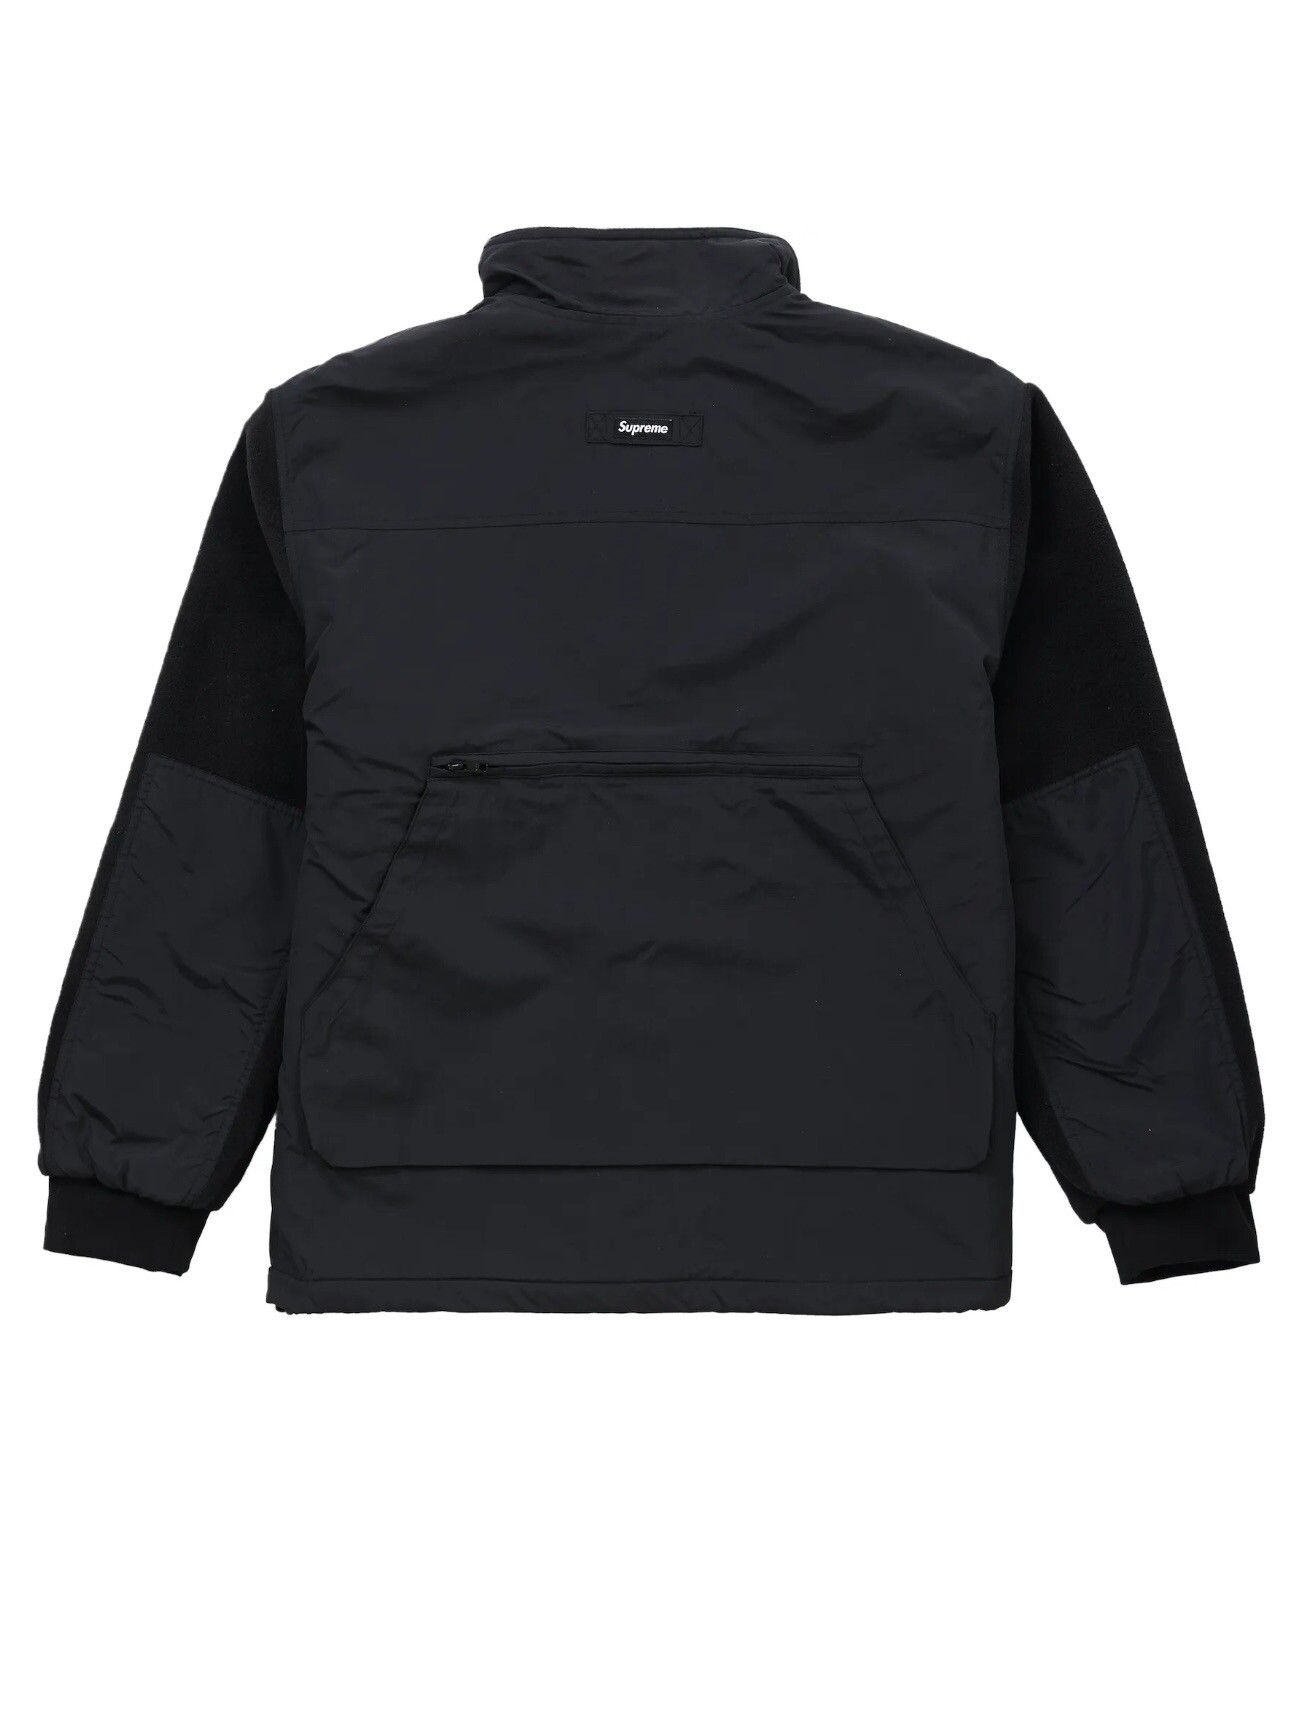 Supreme Supreme Upland Fleece Jacket Black Size Large Vest 